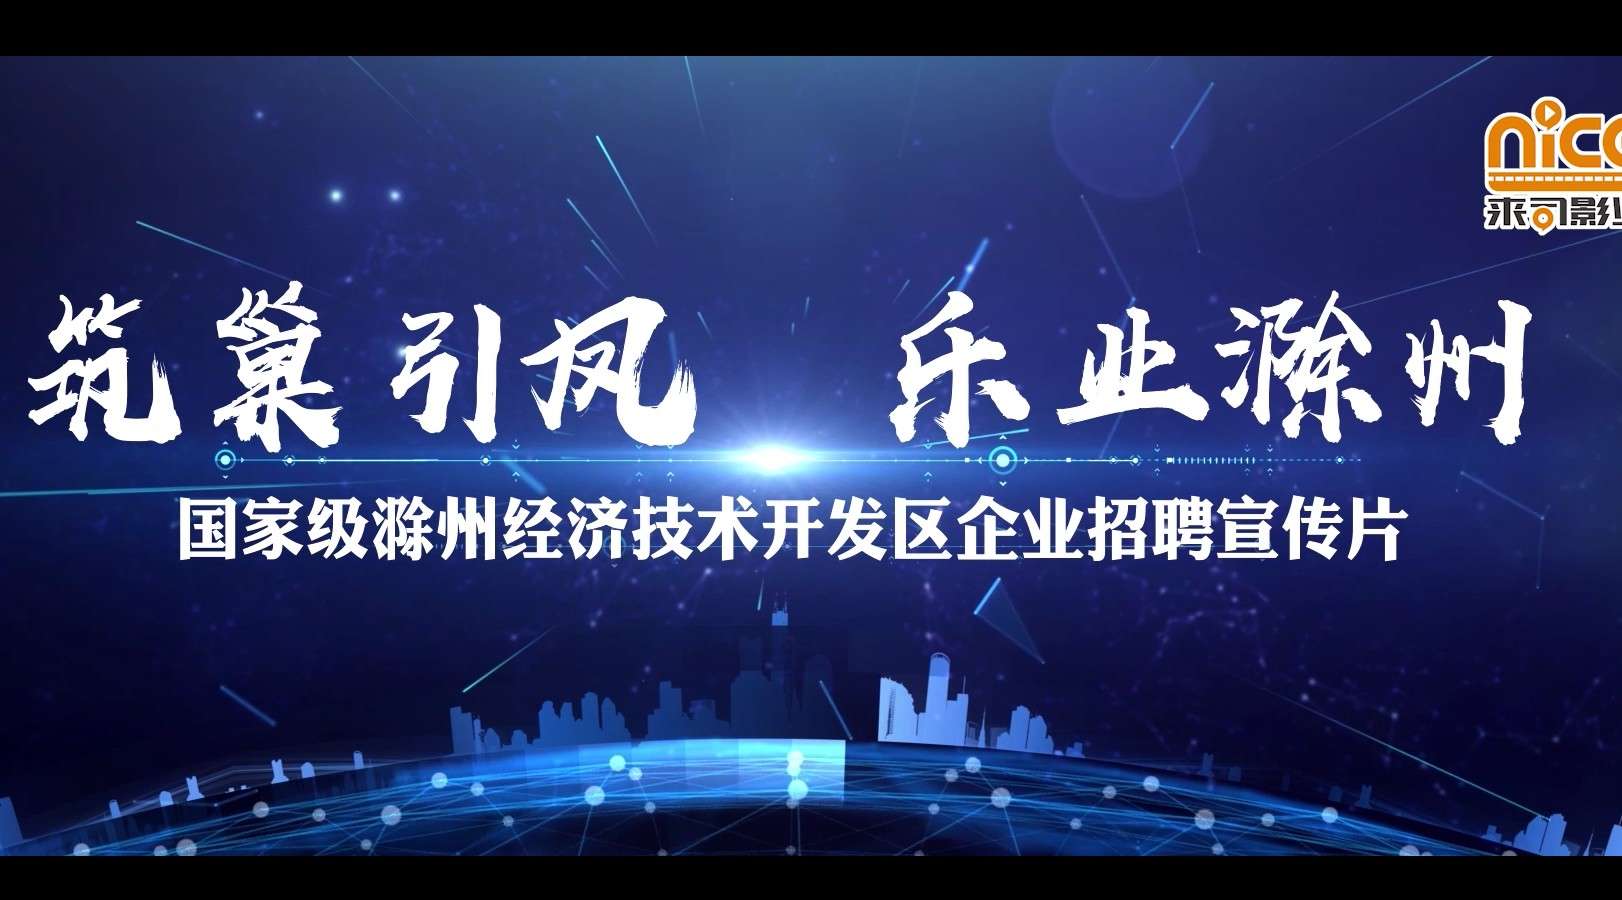 国家级滁州经济技术开发区企业招聘宣传片